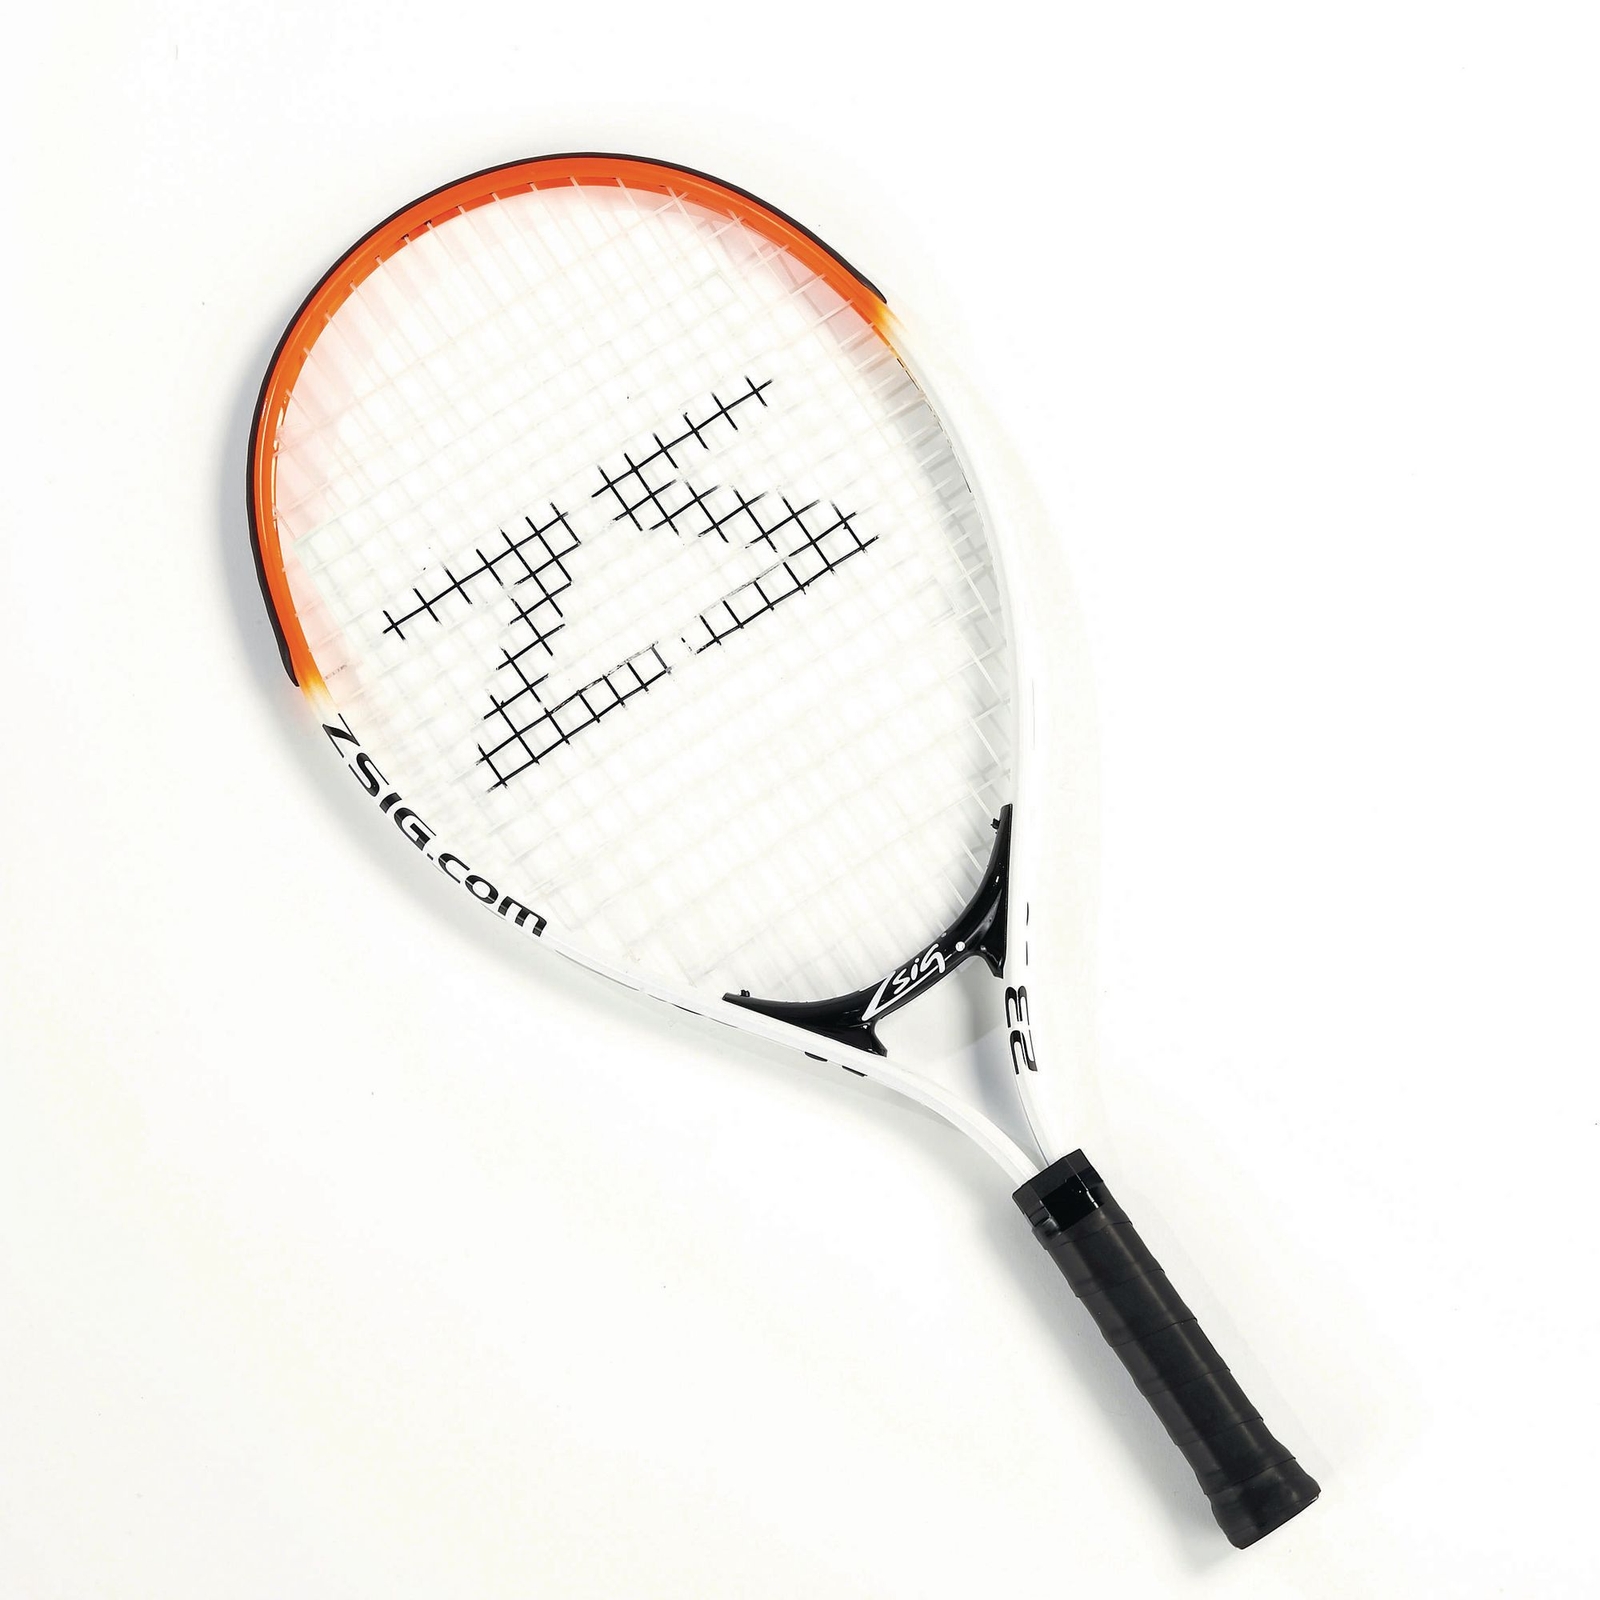 Zsig Tennis Racket - Orange - 23in - Each